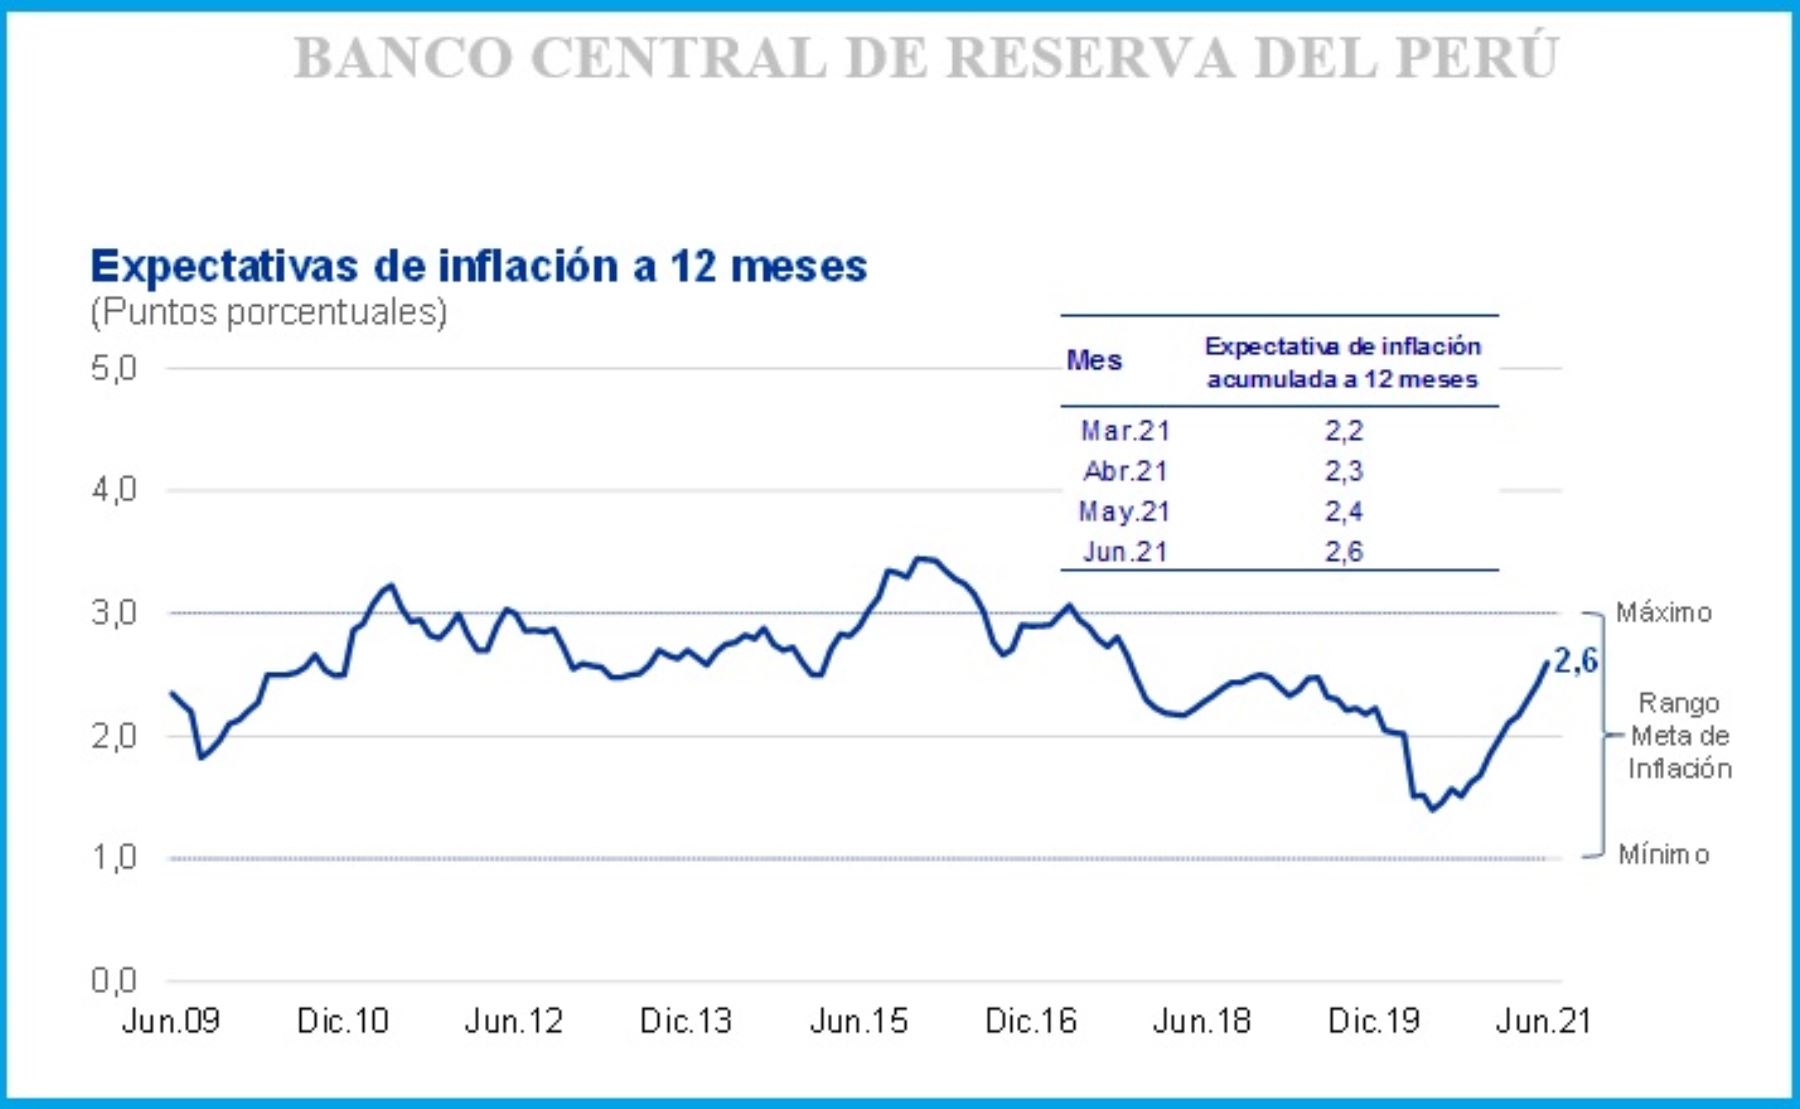 BCR la expectativa de inflación a 12 meses se ubica en 2.6 Noticias